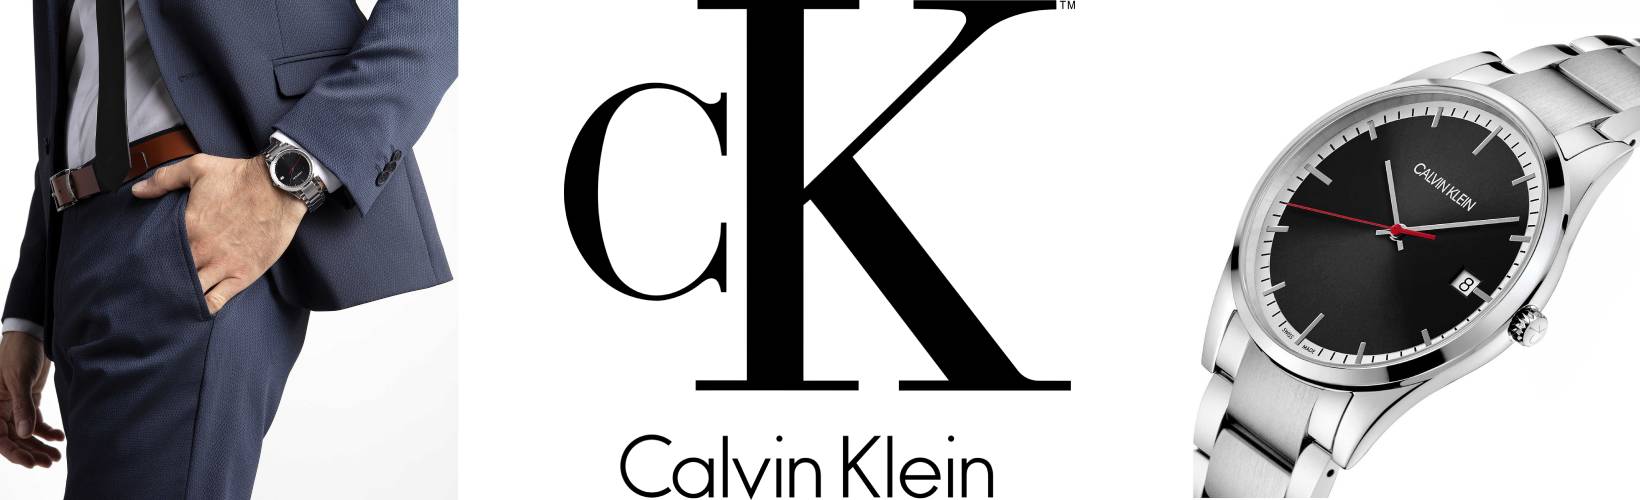 Calvin Klein Time